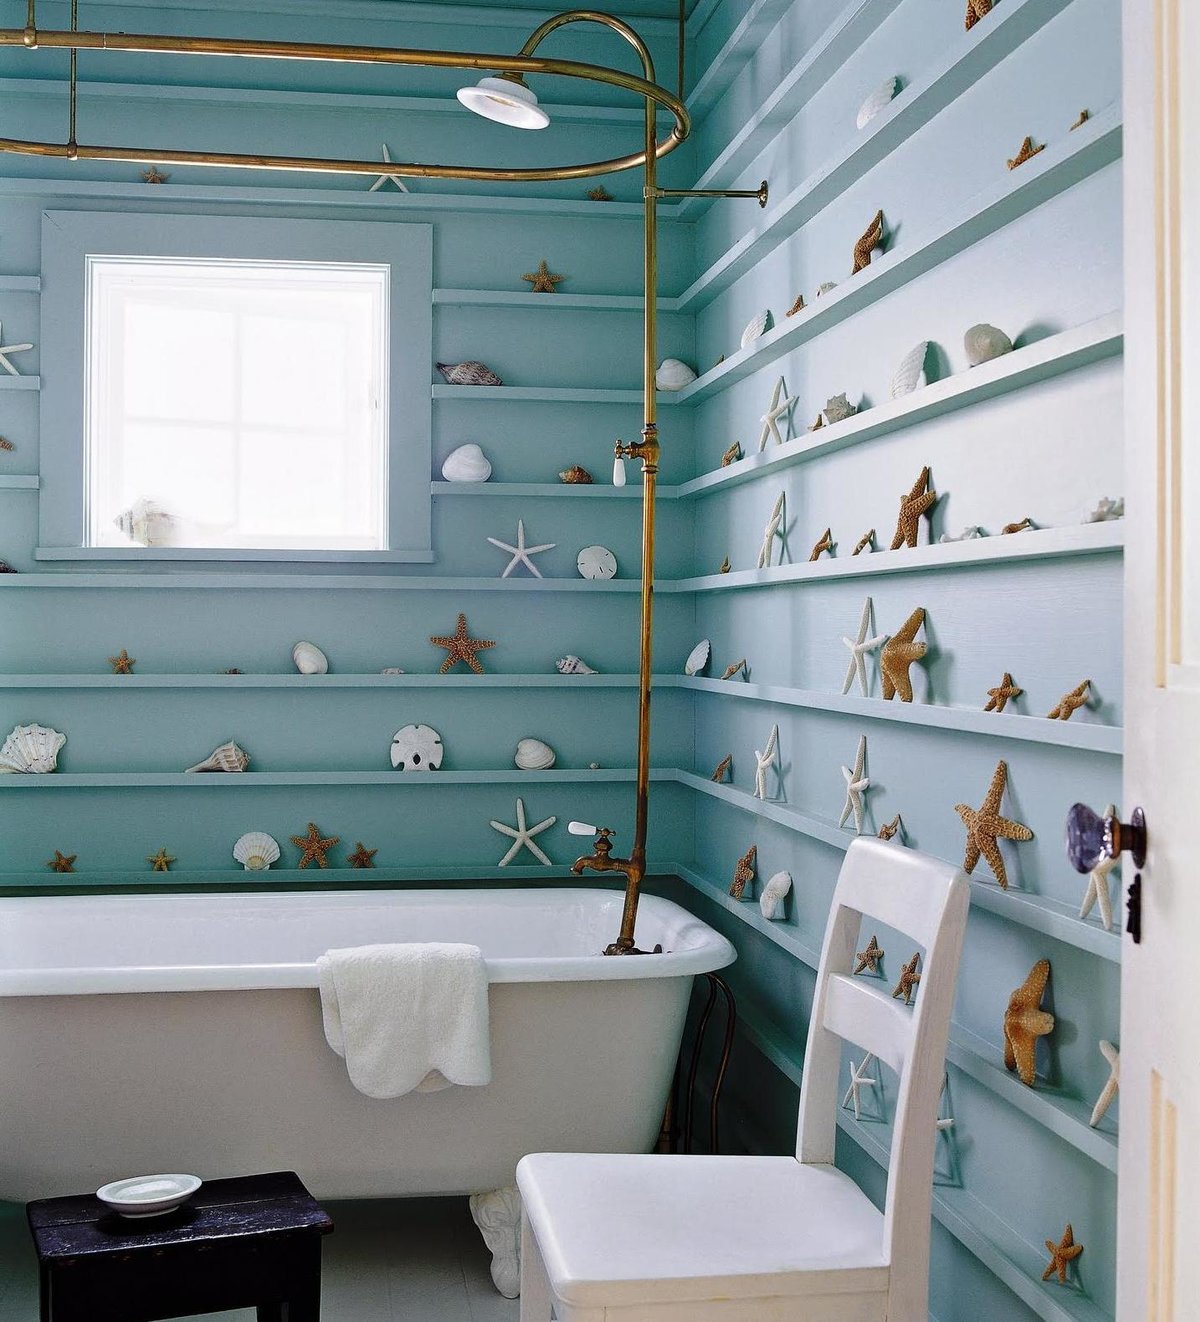 Как украсить стены в ванной комнате? Идеи для дизайна ванной